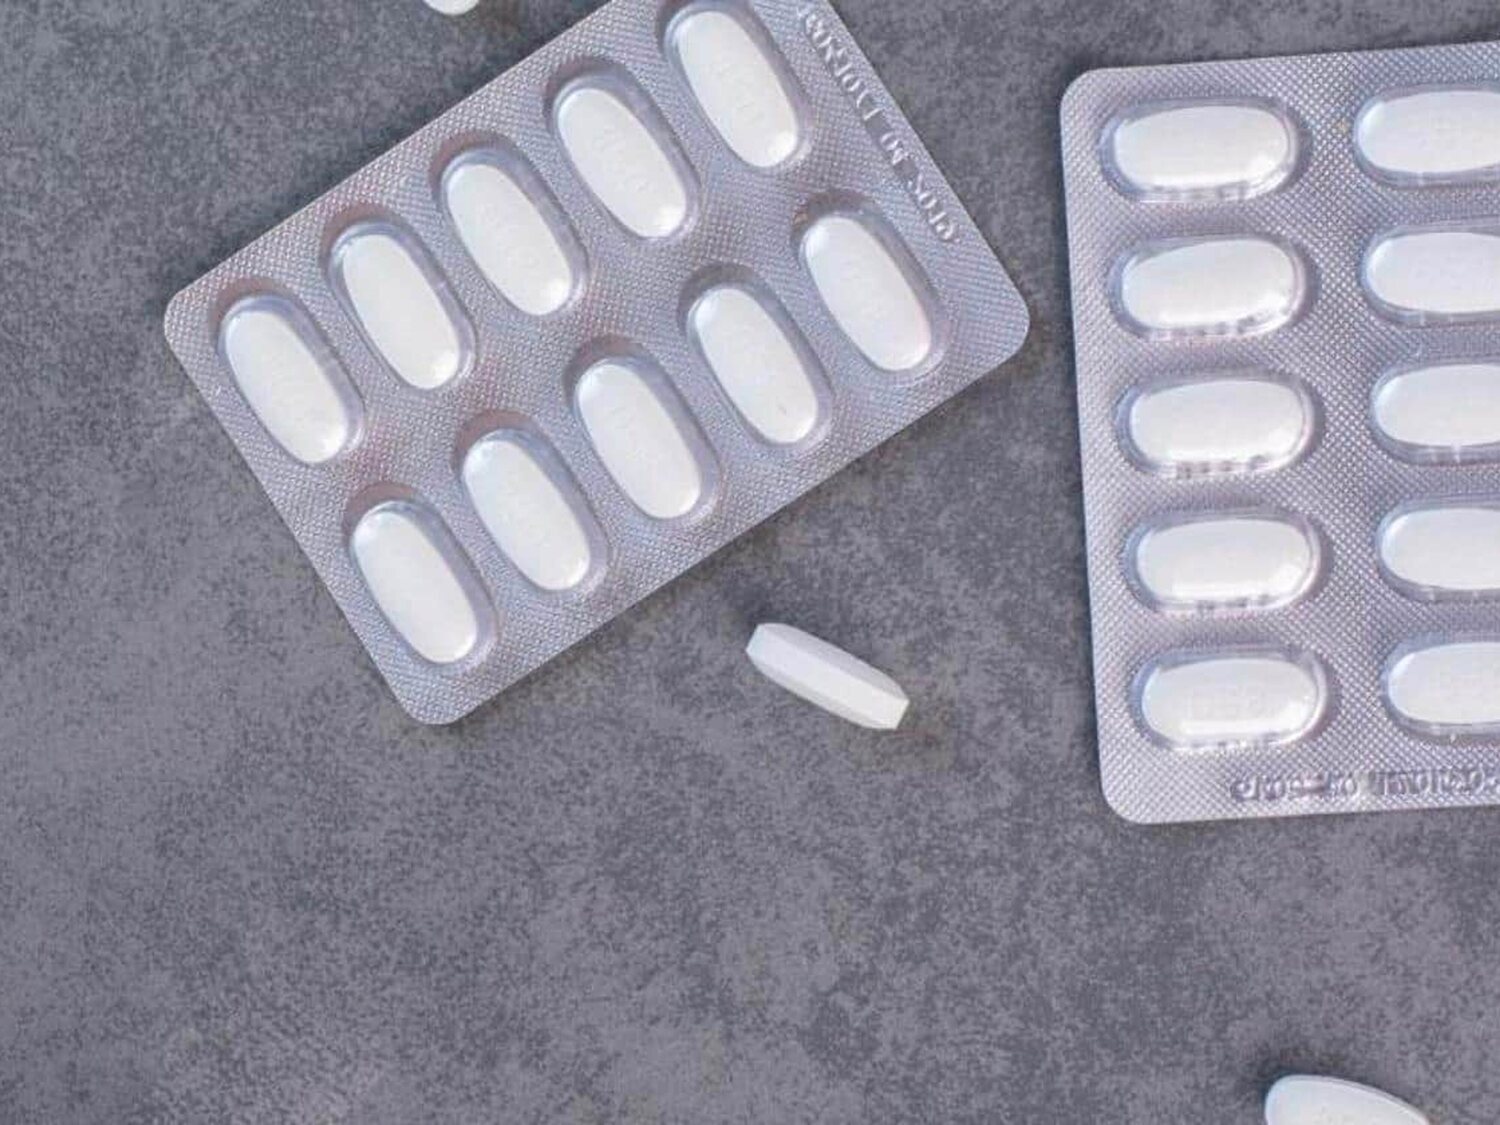 La OCU pide a Sanidad que investigue el aumento de efectos adversos asociados al autoconsumo de ibuprofeno